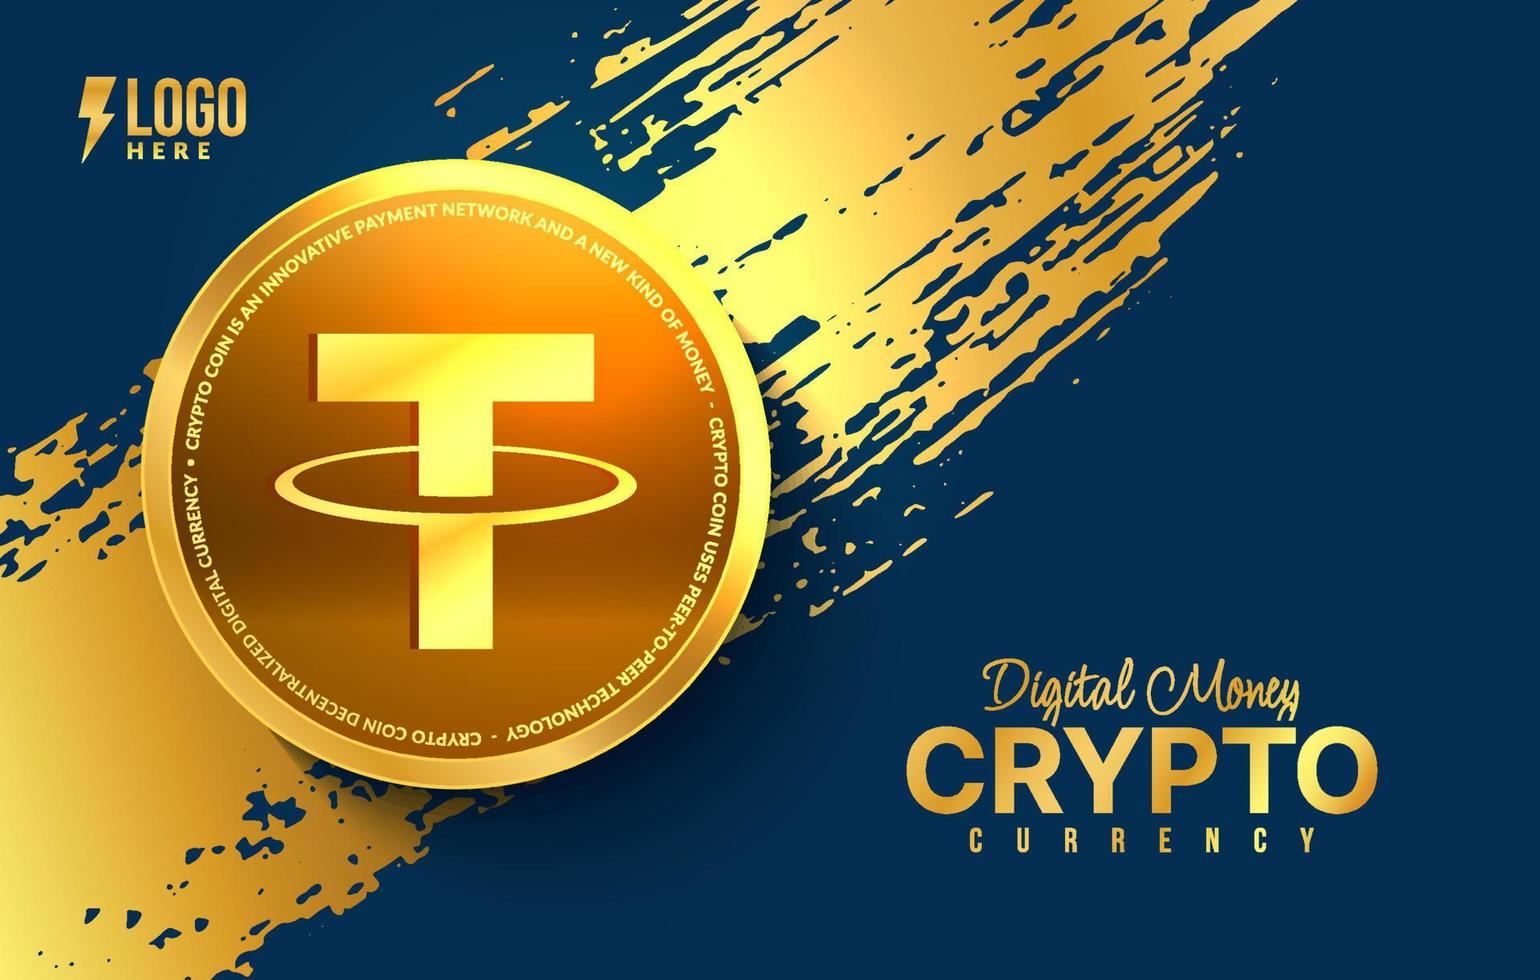 fond de monnaie cryptographique, échange d'argent numérique de la technologie blockchain, exploitation minière et financière de crypto-monnaie vecteur